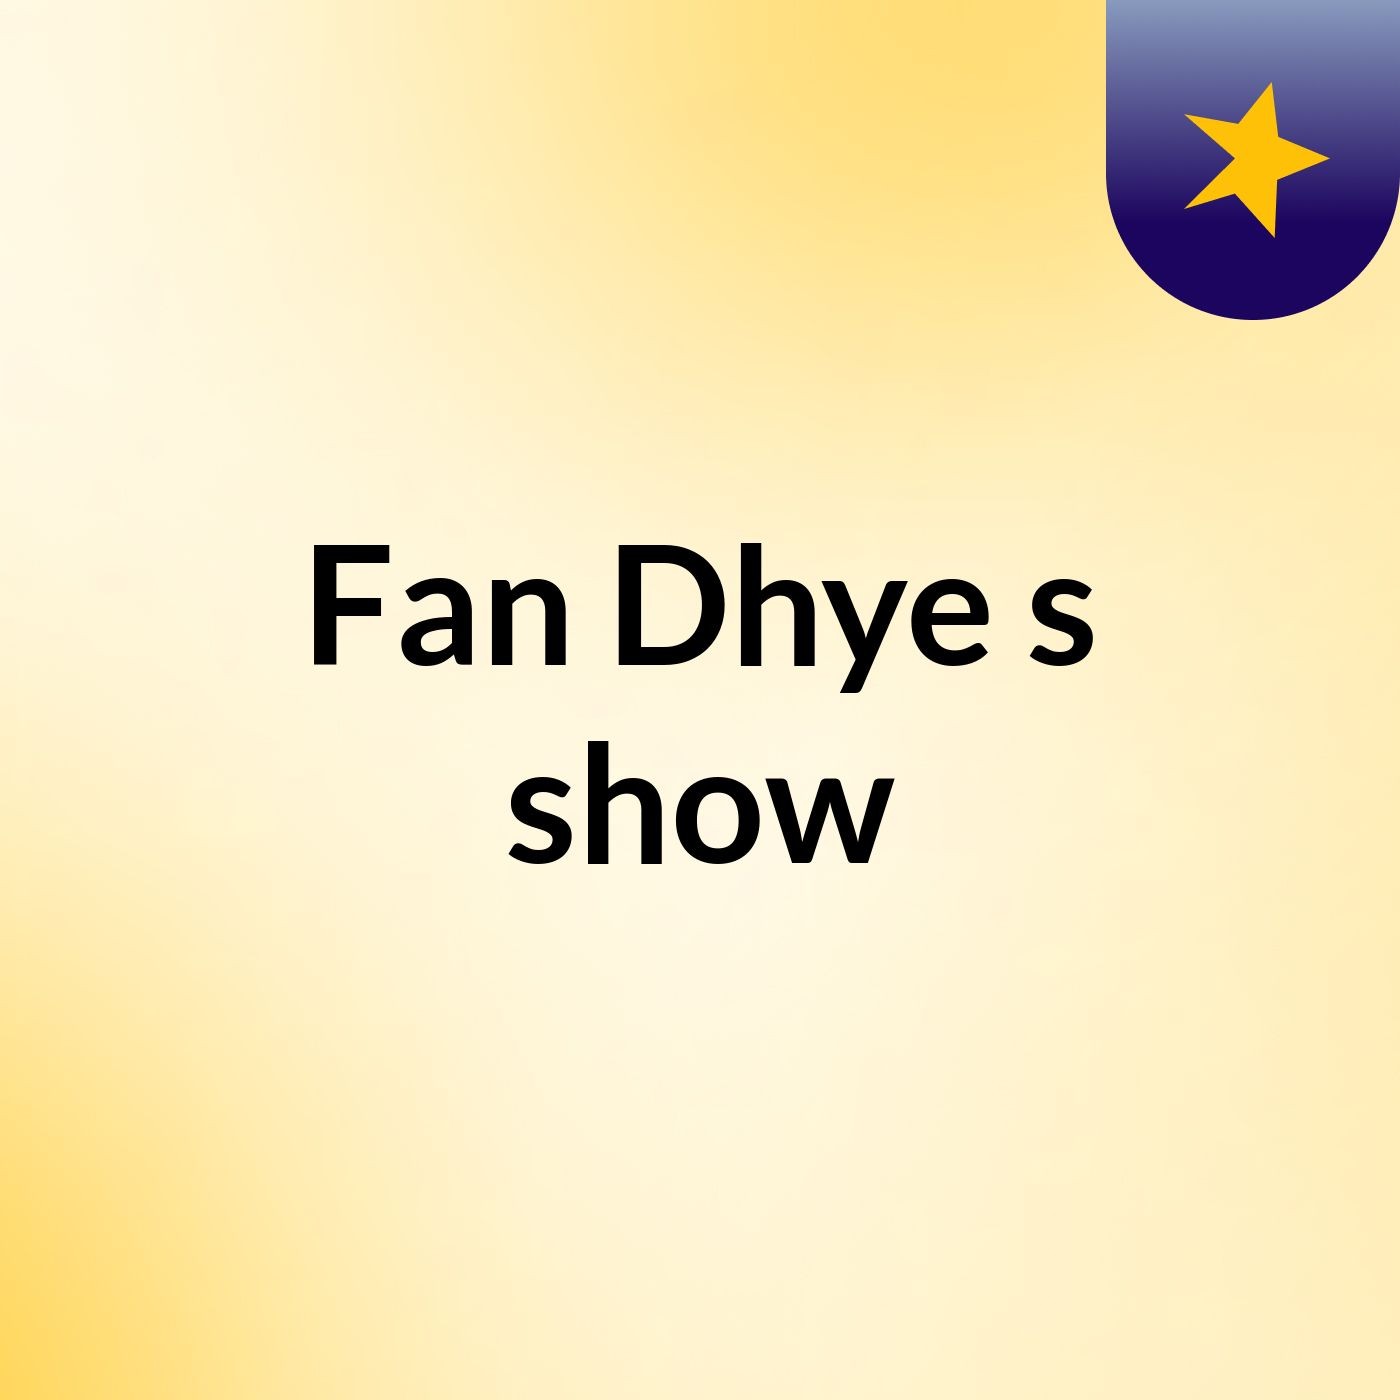 Fan Dhye's show